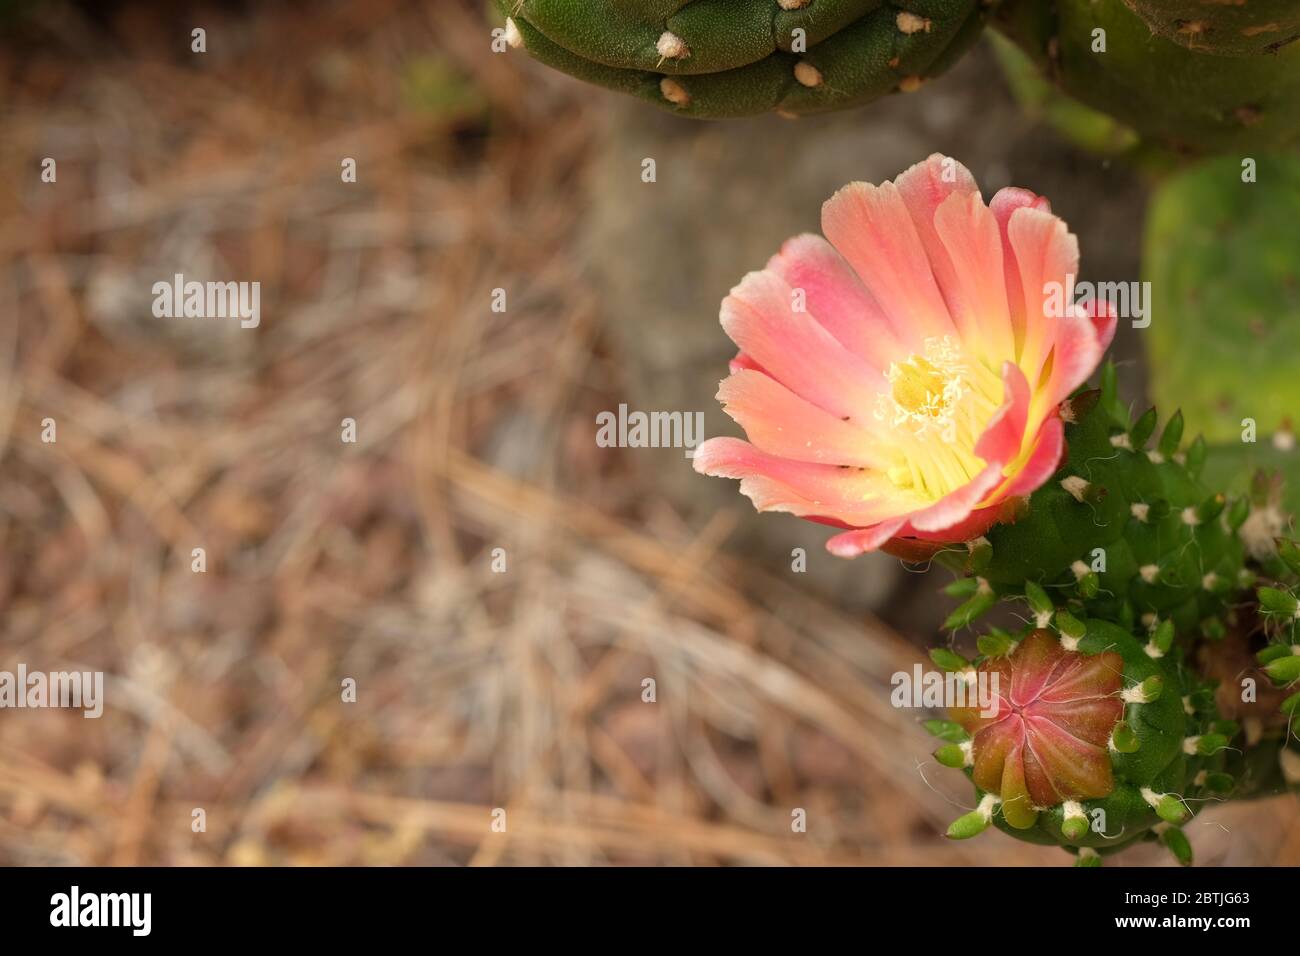 Flores de cactus rojas y rosadas. Foto de stock